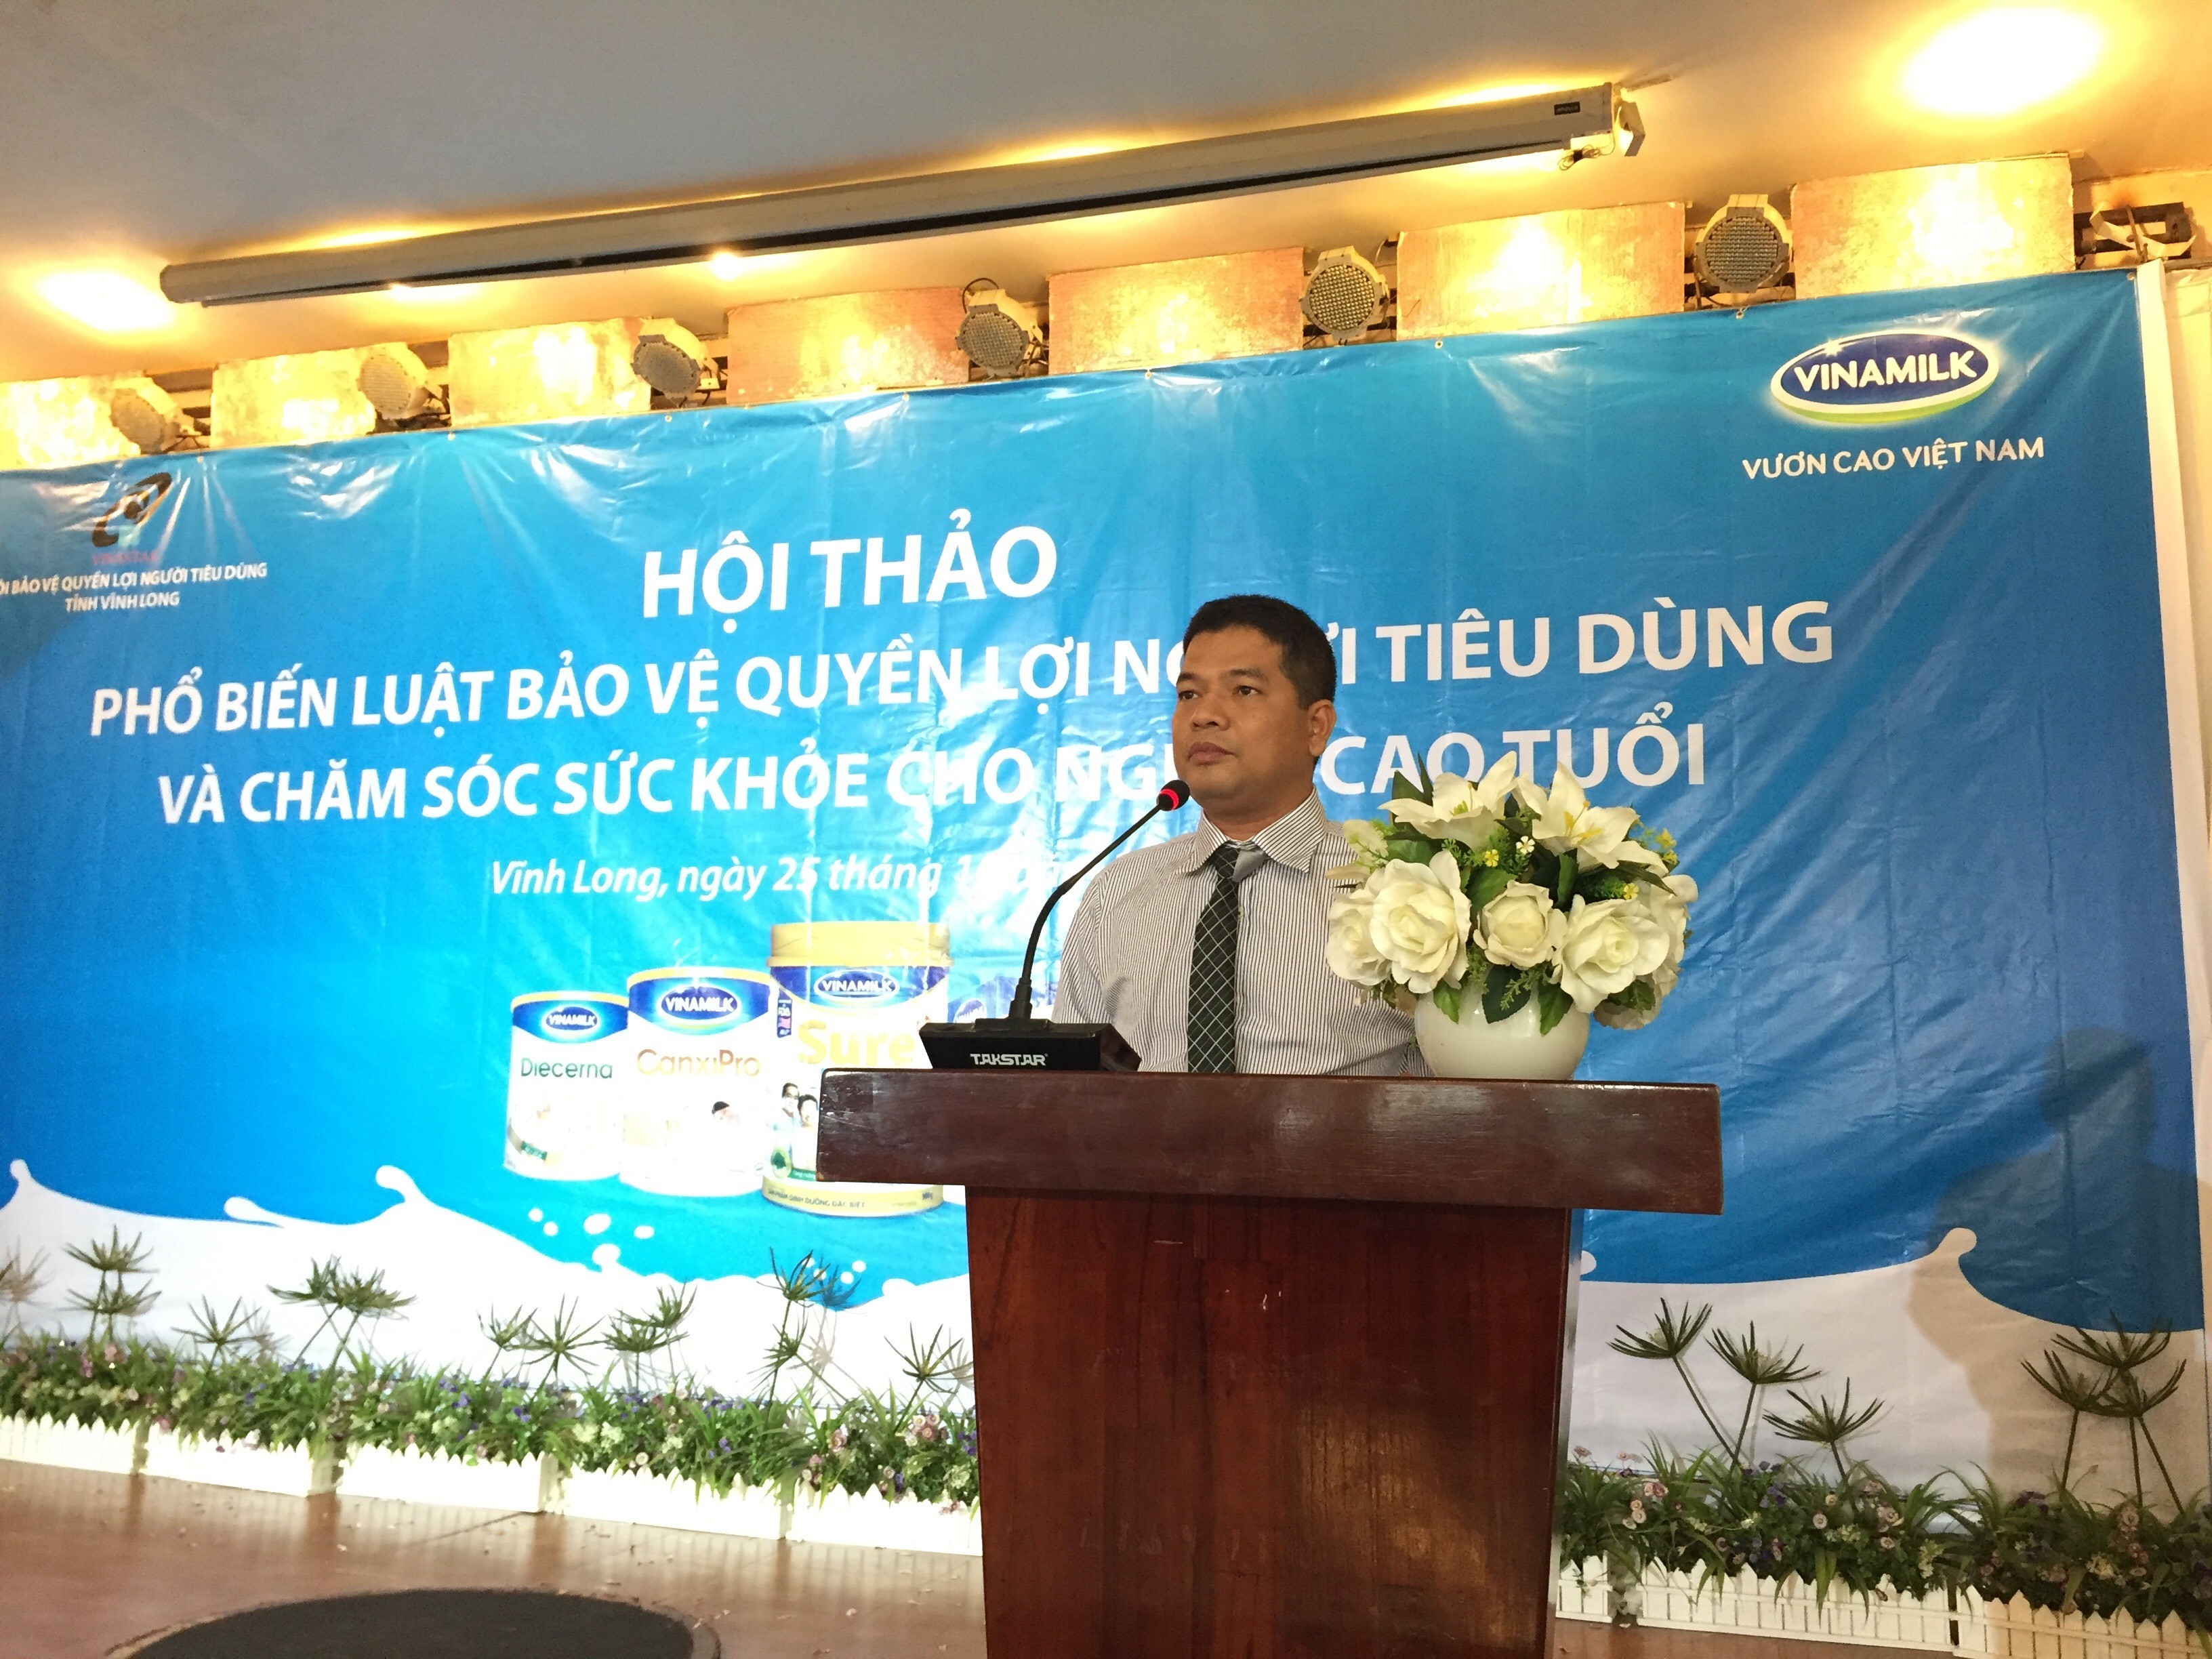 Ông Trần Hữu Định – Giám đốc kinh doanh miền Tây phát biểu tại hội thảo.